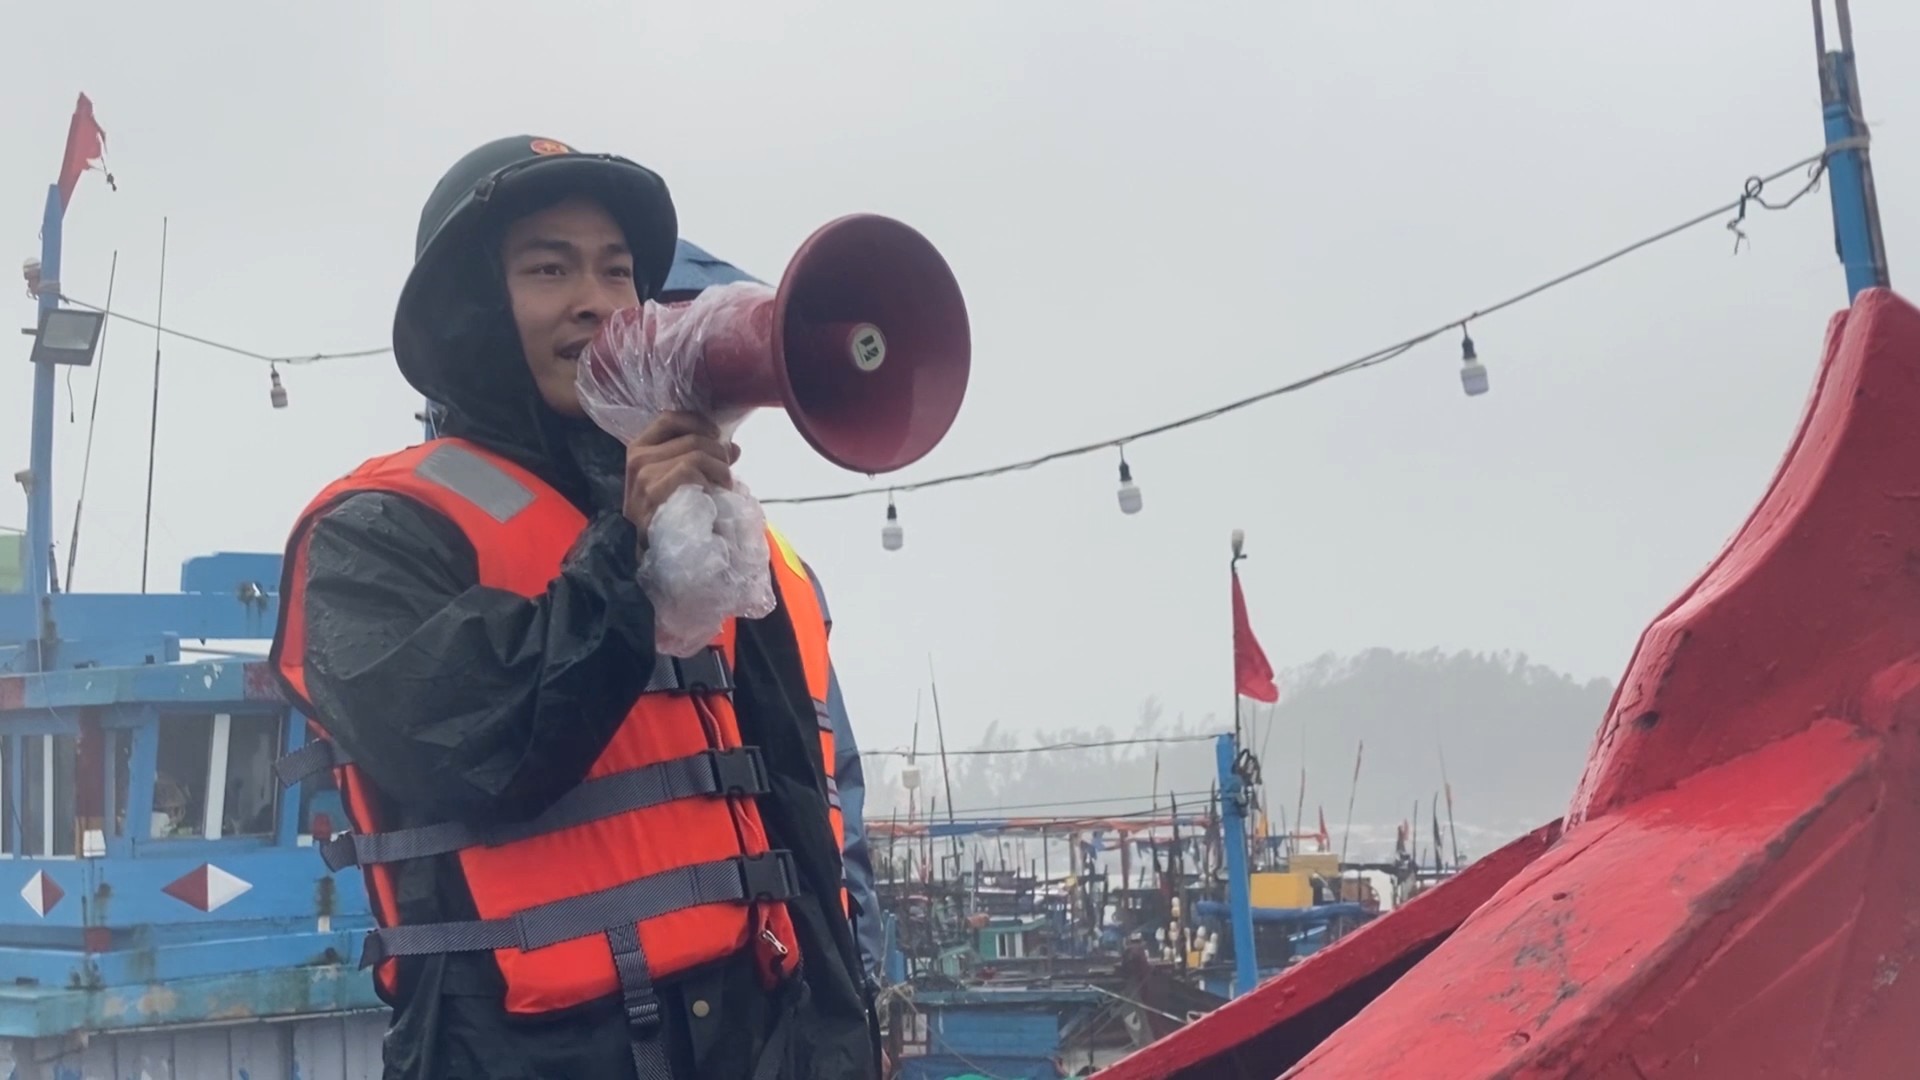 Bộ đội biên phòng Quảng Ngãi kêu gọi, hướng dẫn ngư dân đưa tàu thuyền đến nơi tránh trú bão an toàn.